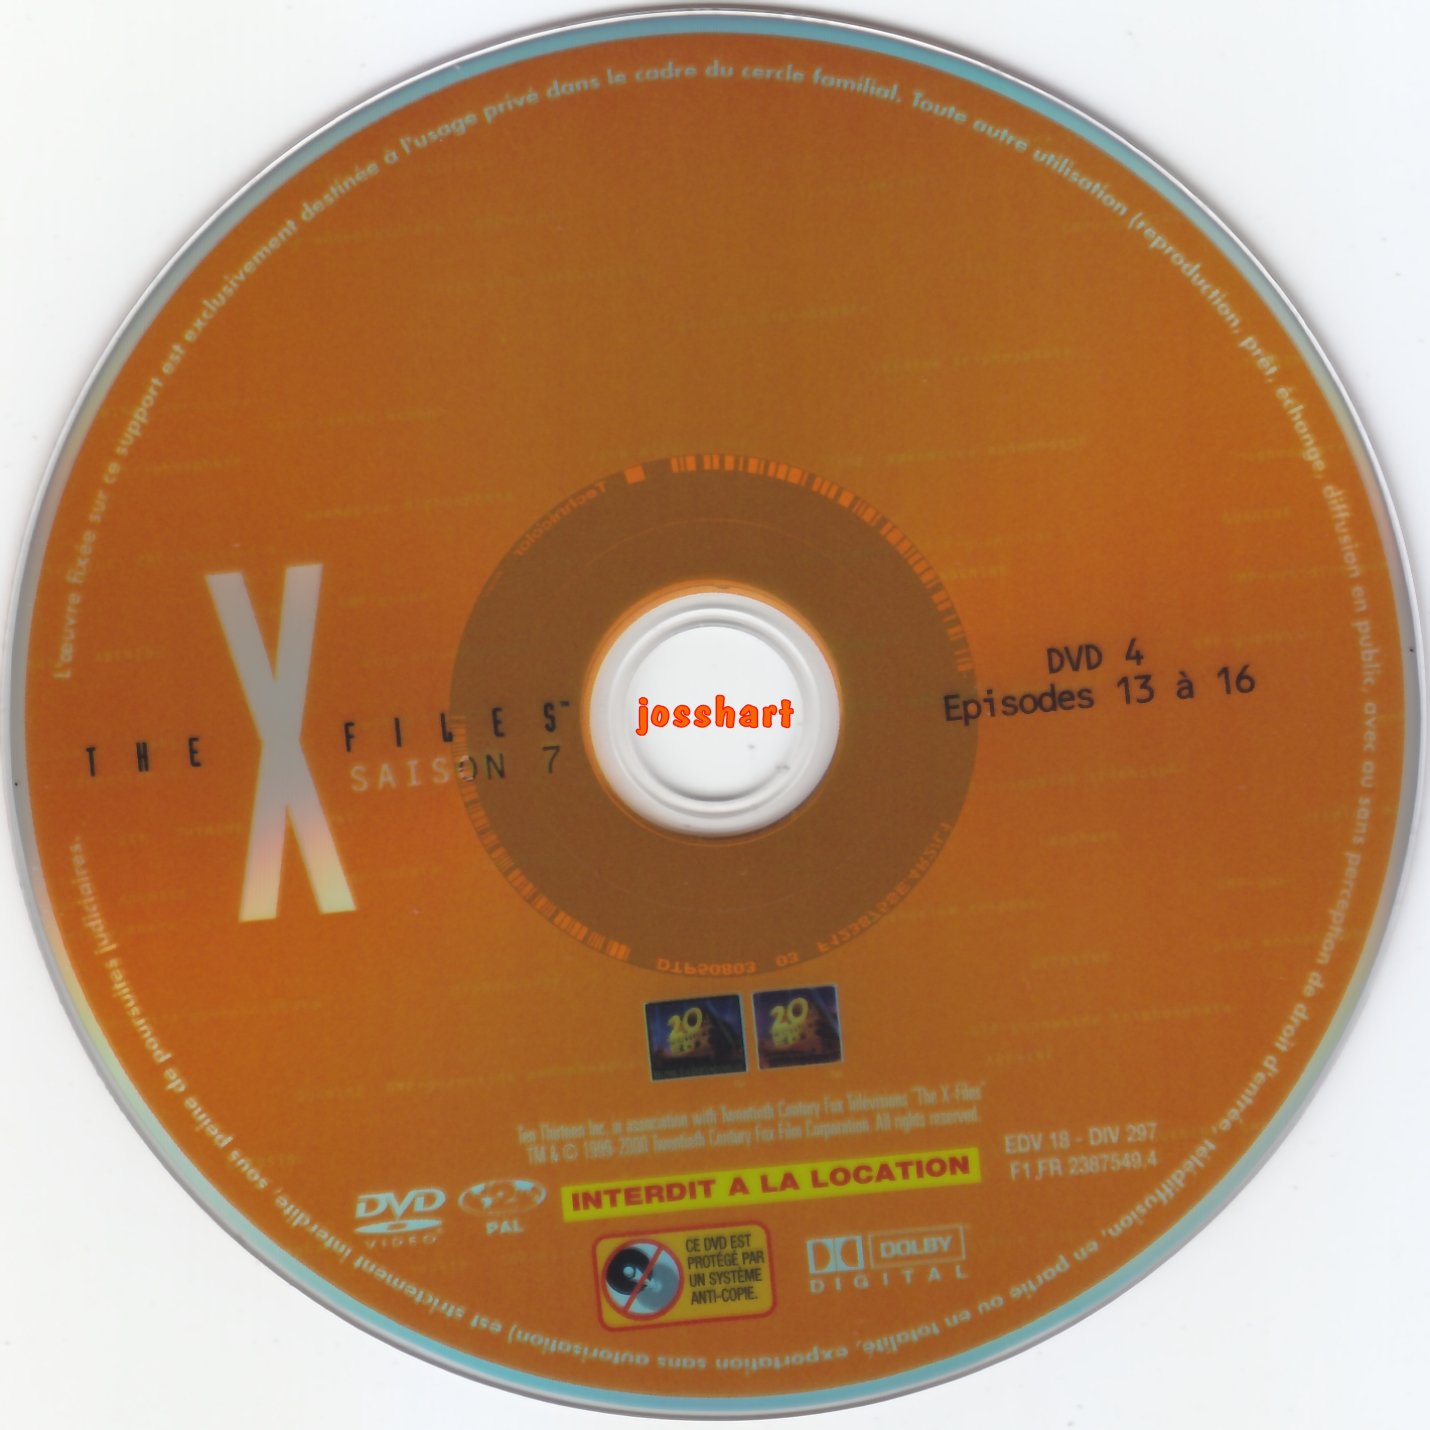 The X Files Saison 7 DVD 4 v2